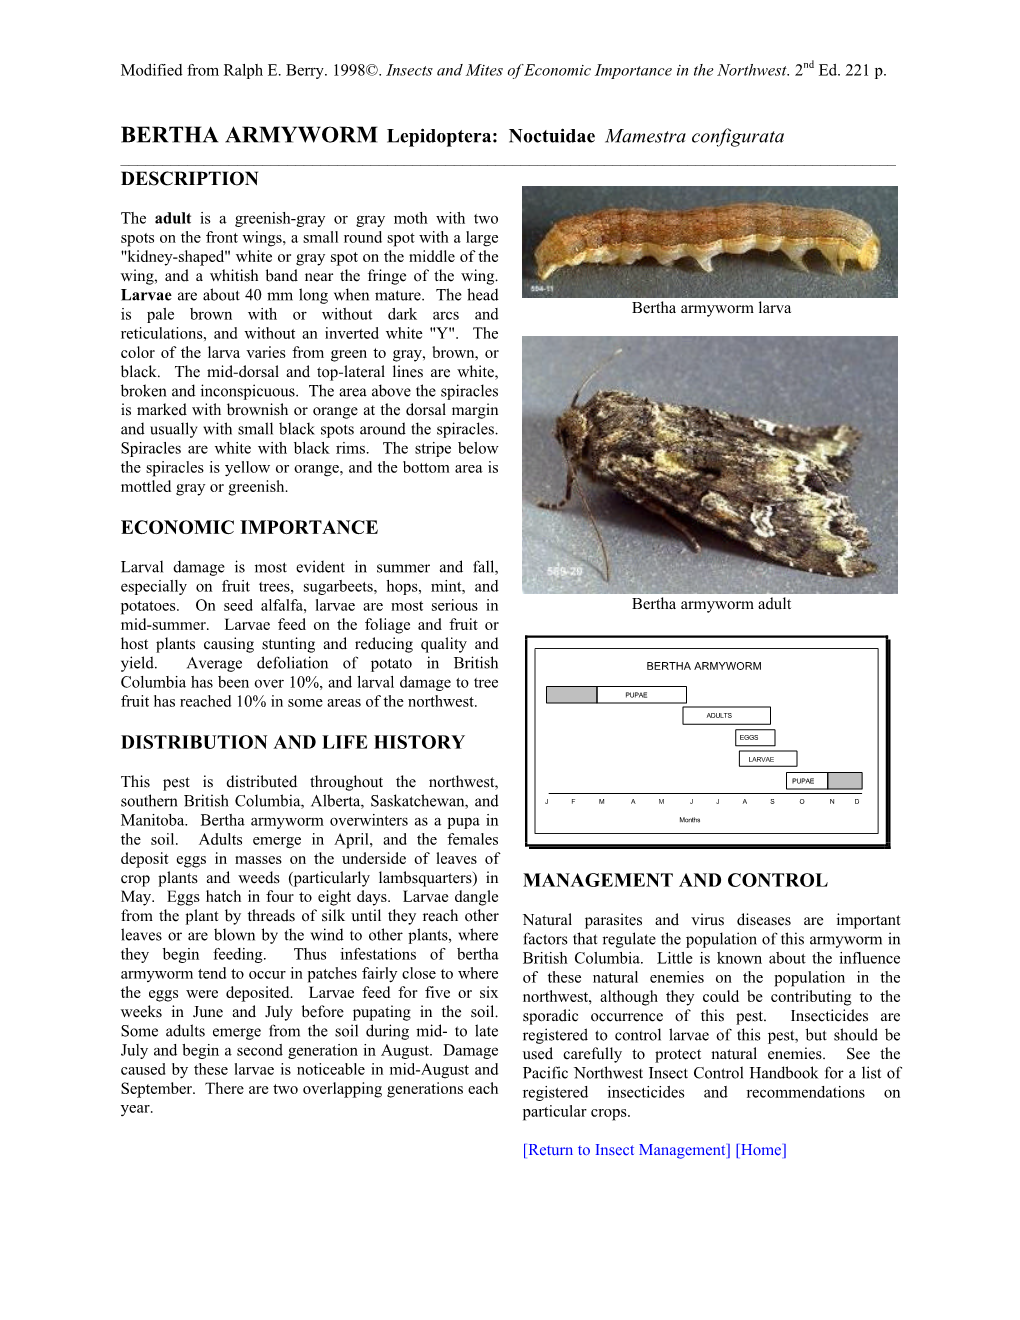 BERTHA ARMYWORM Lepidoptera: Noctuidae Mamestra Configurata ______DESCRIPTION